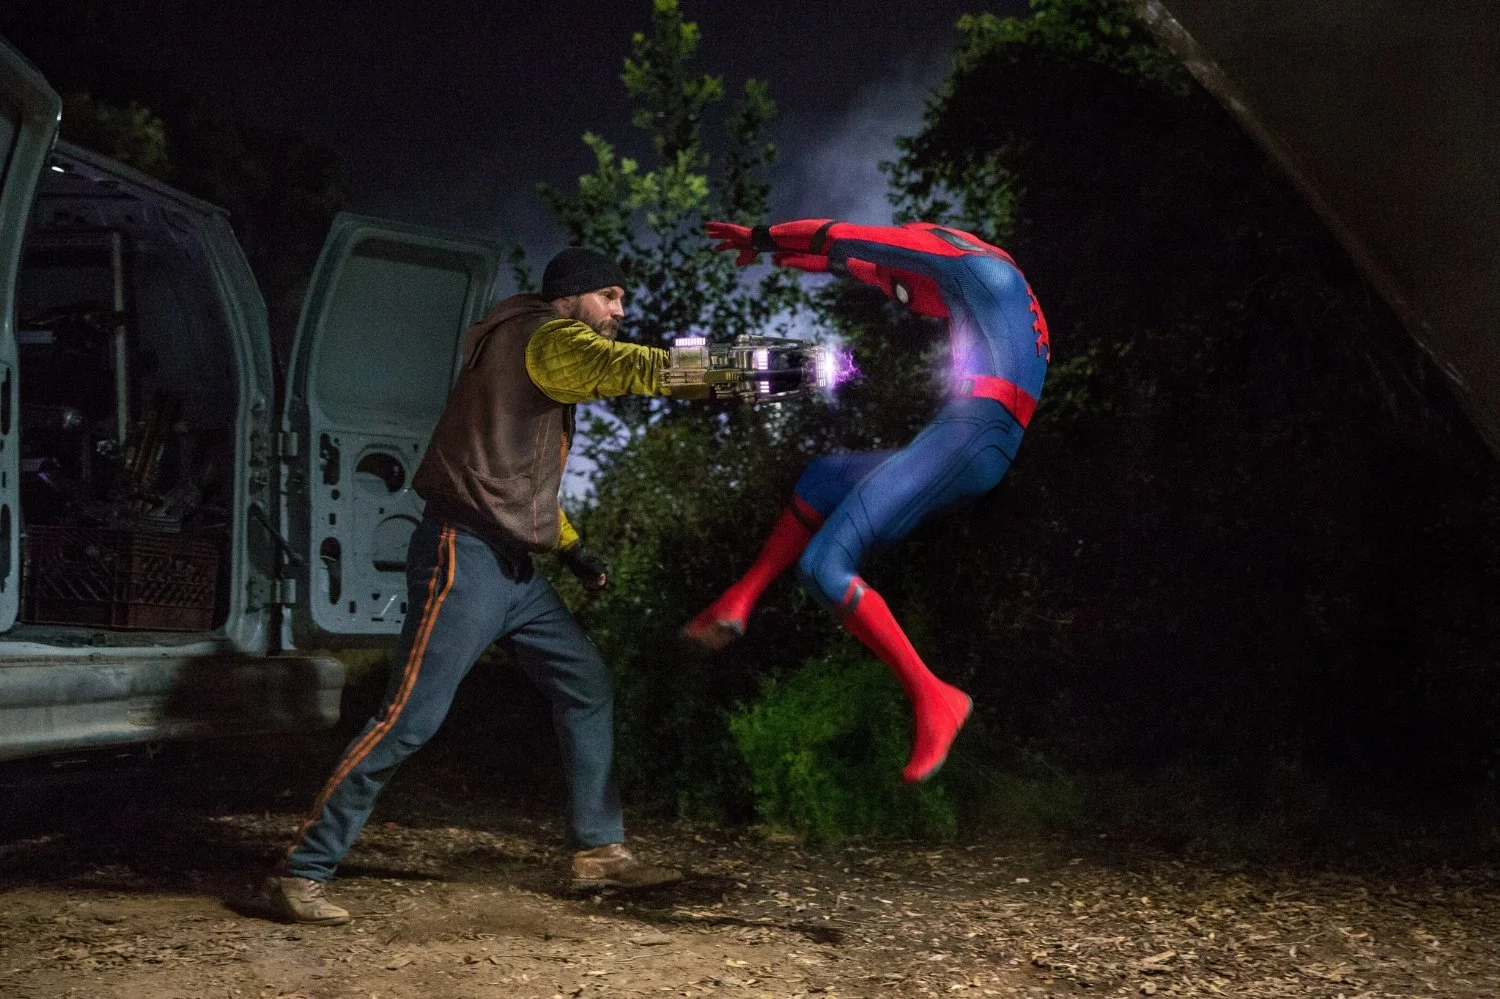 Сравниваем три киноверсии Человека-паука: Магуайр, Гарфилд, Холланд - фото 12